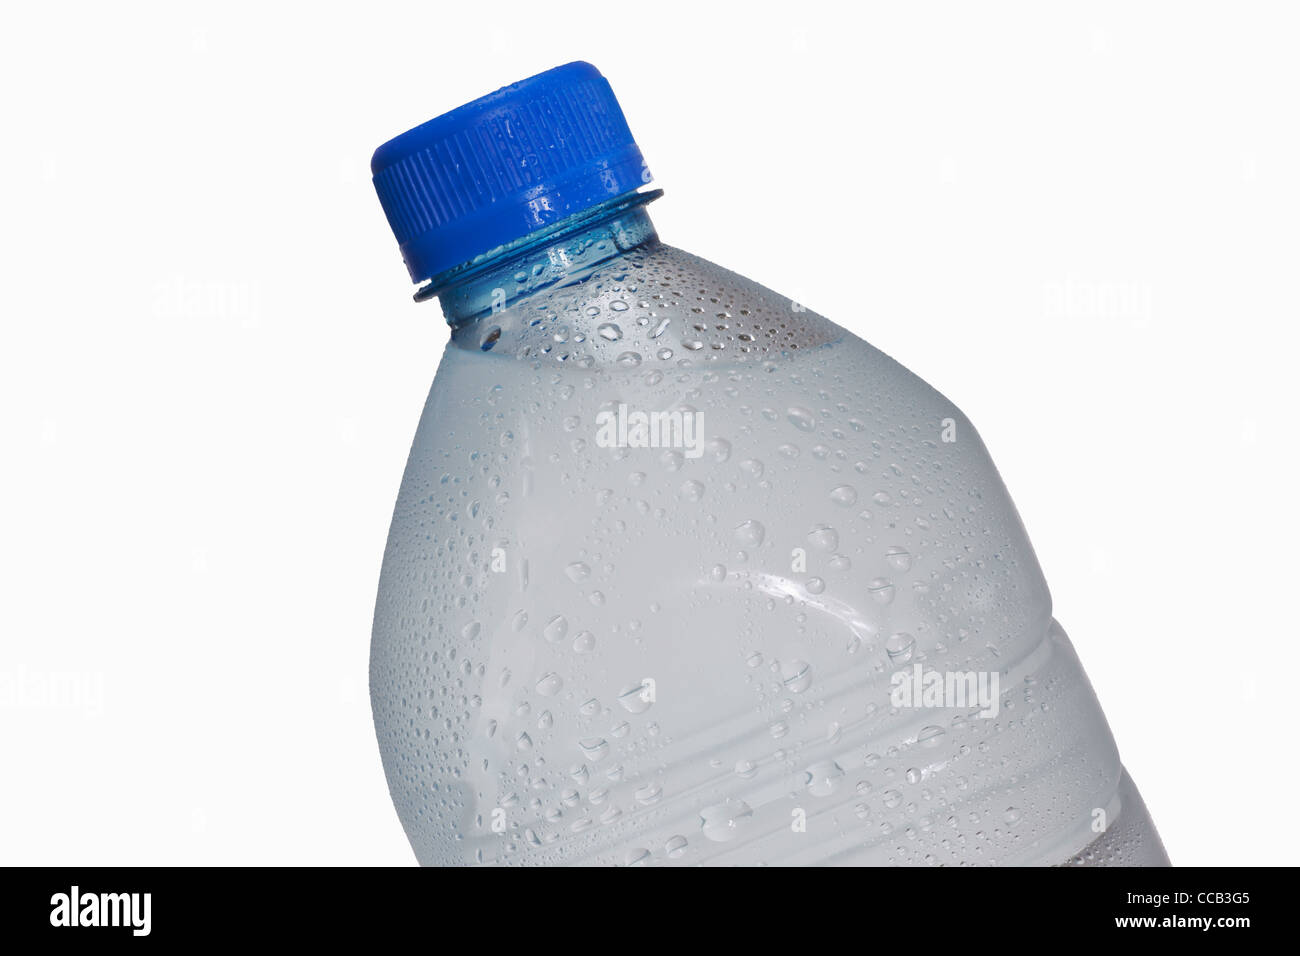 Detailansicht einer Wasserflasche | Detail photo of a water bottle Stock Photo